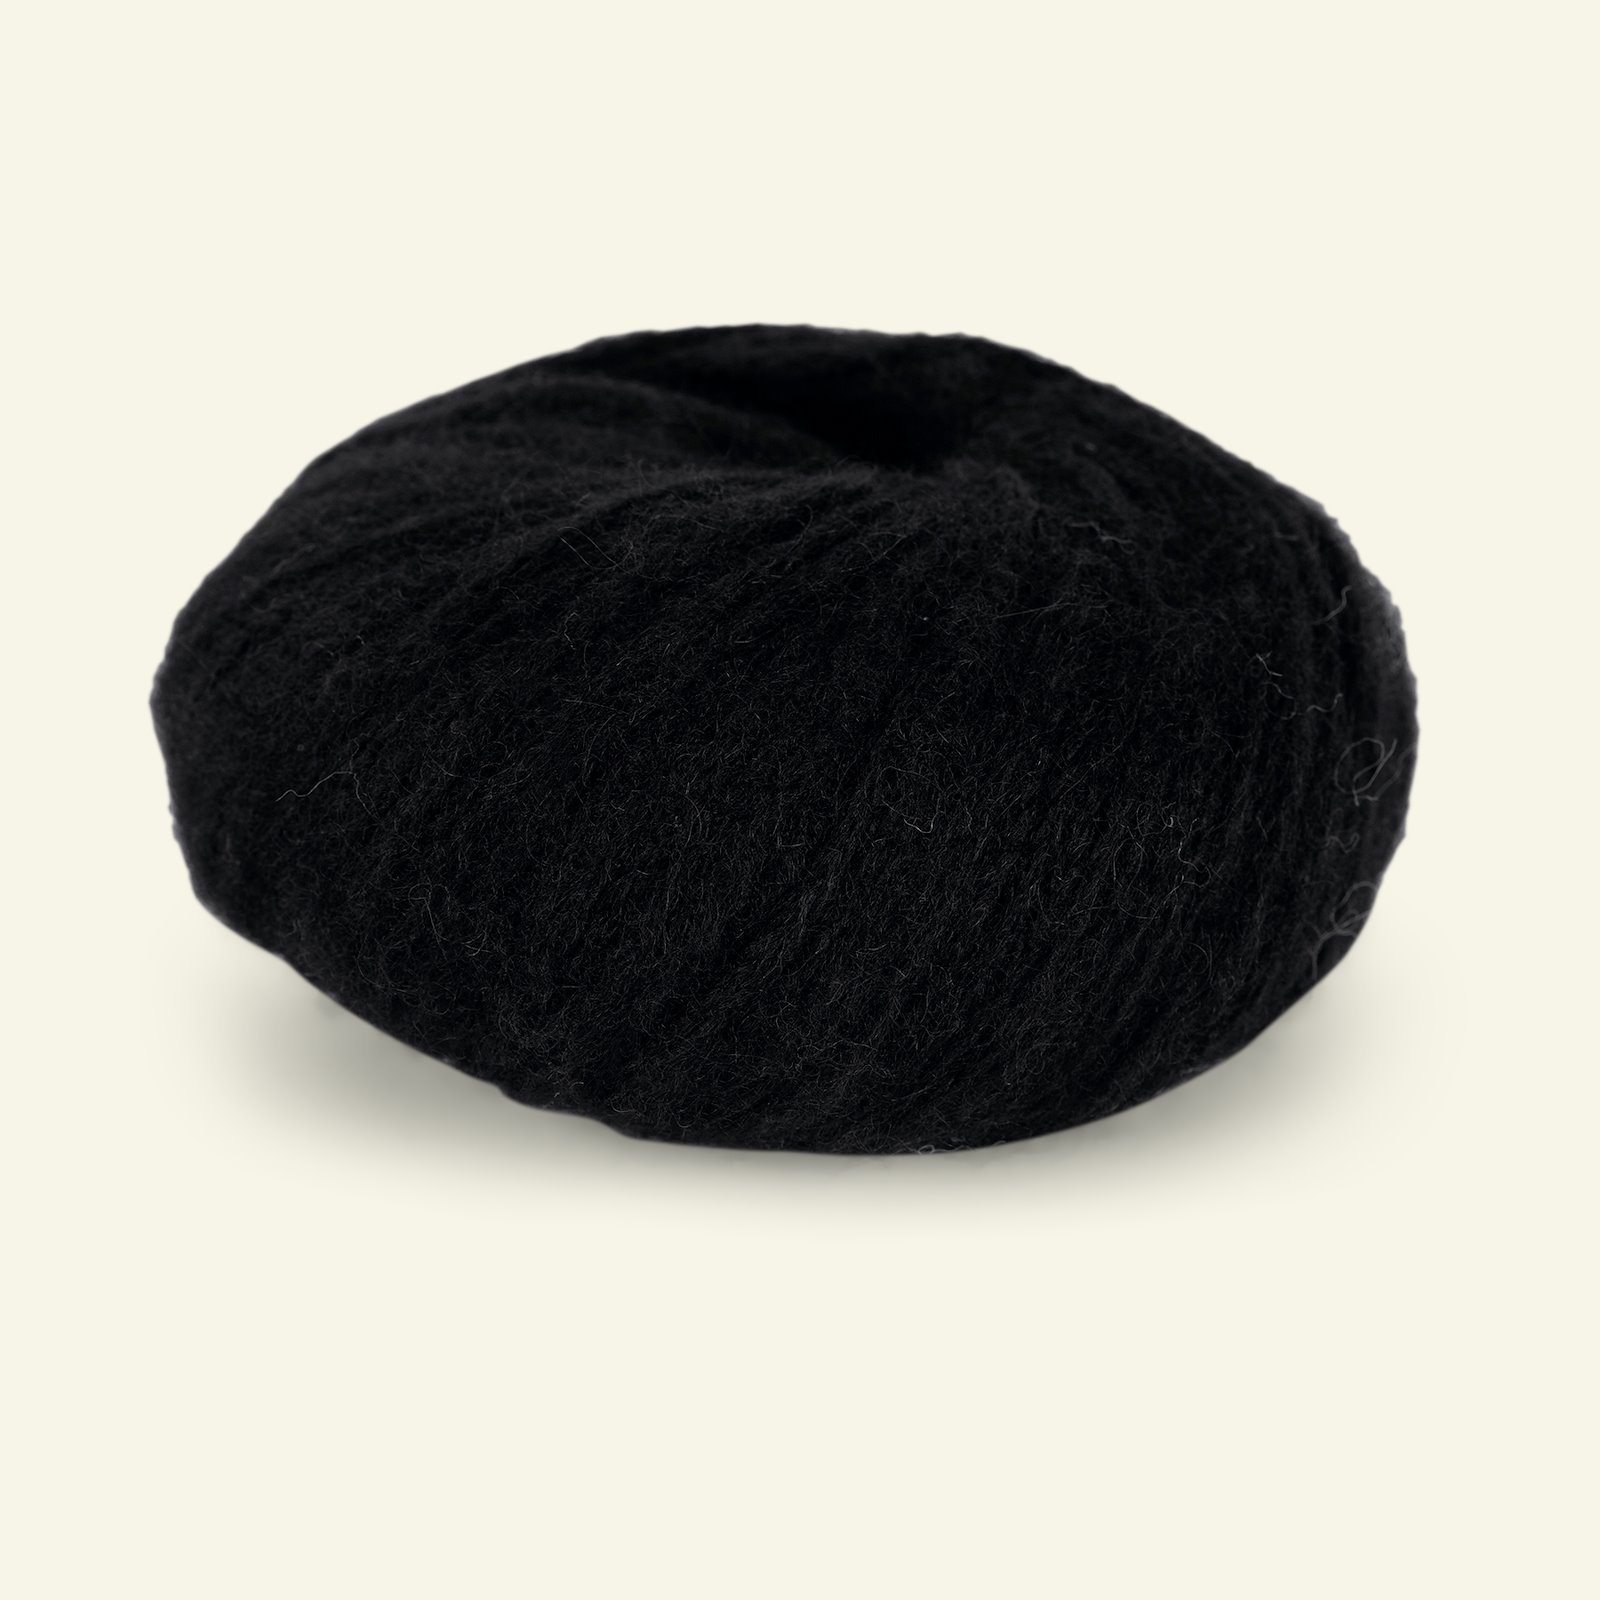 Du Store Alpakka, alpaca mixed yarn "Pus", black (4017) 90000720_pack_b